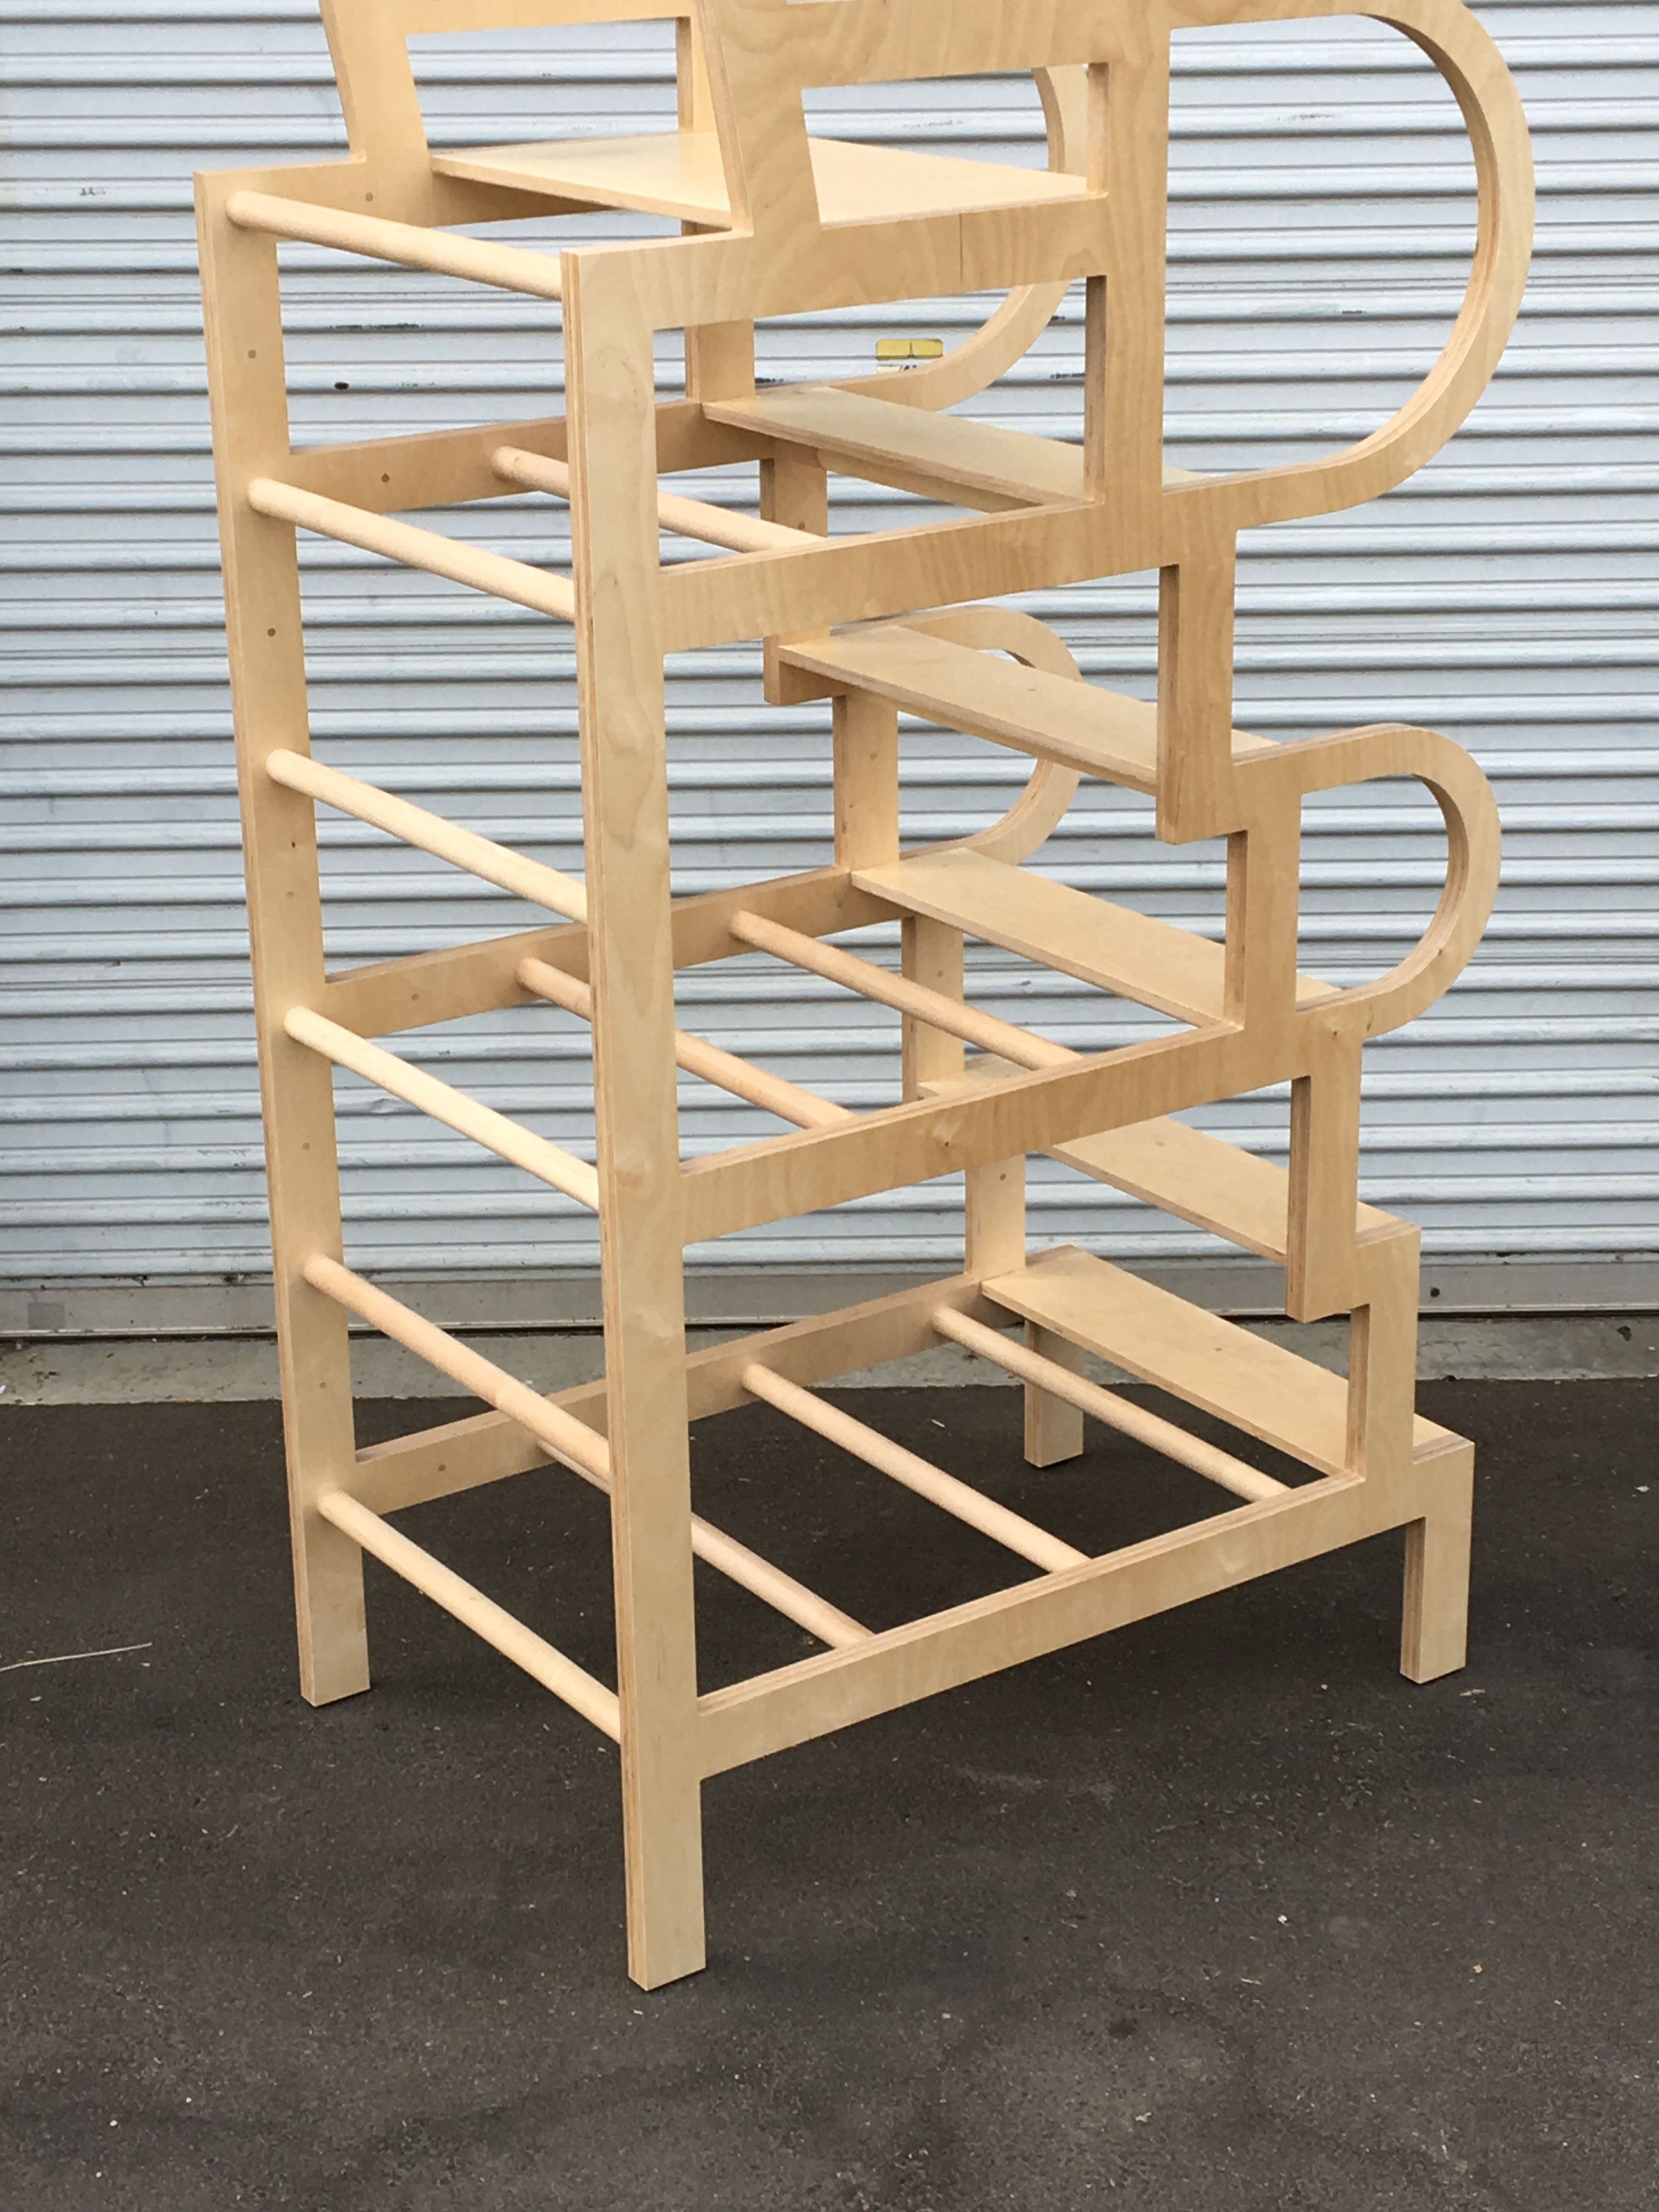  Climbable Chair - Owl Bureau x Adidas / Abbott Kinney Festival product image 10